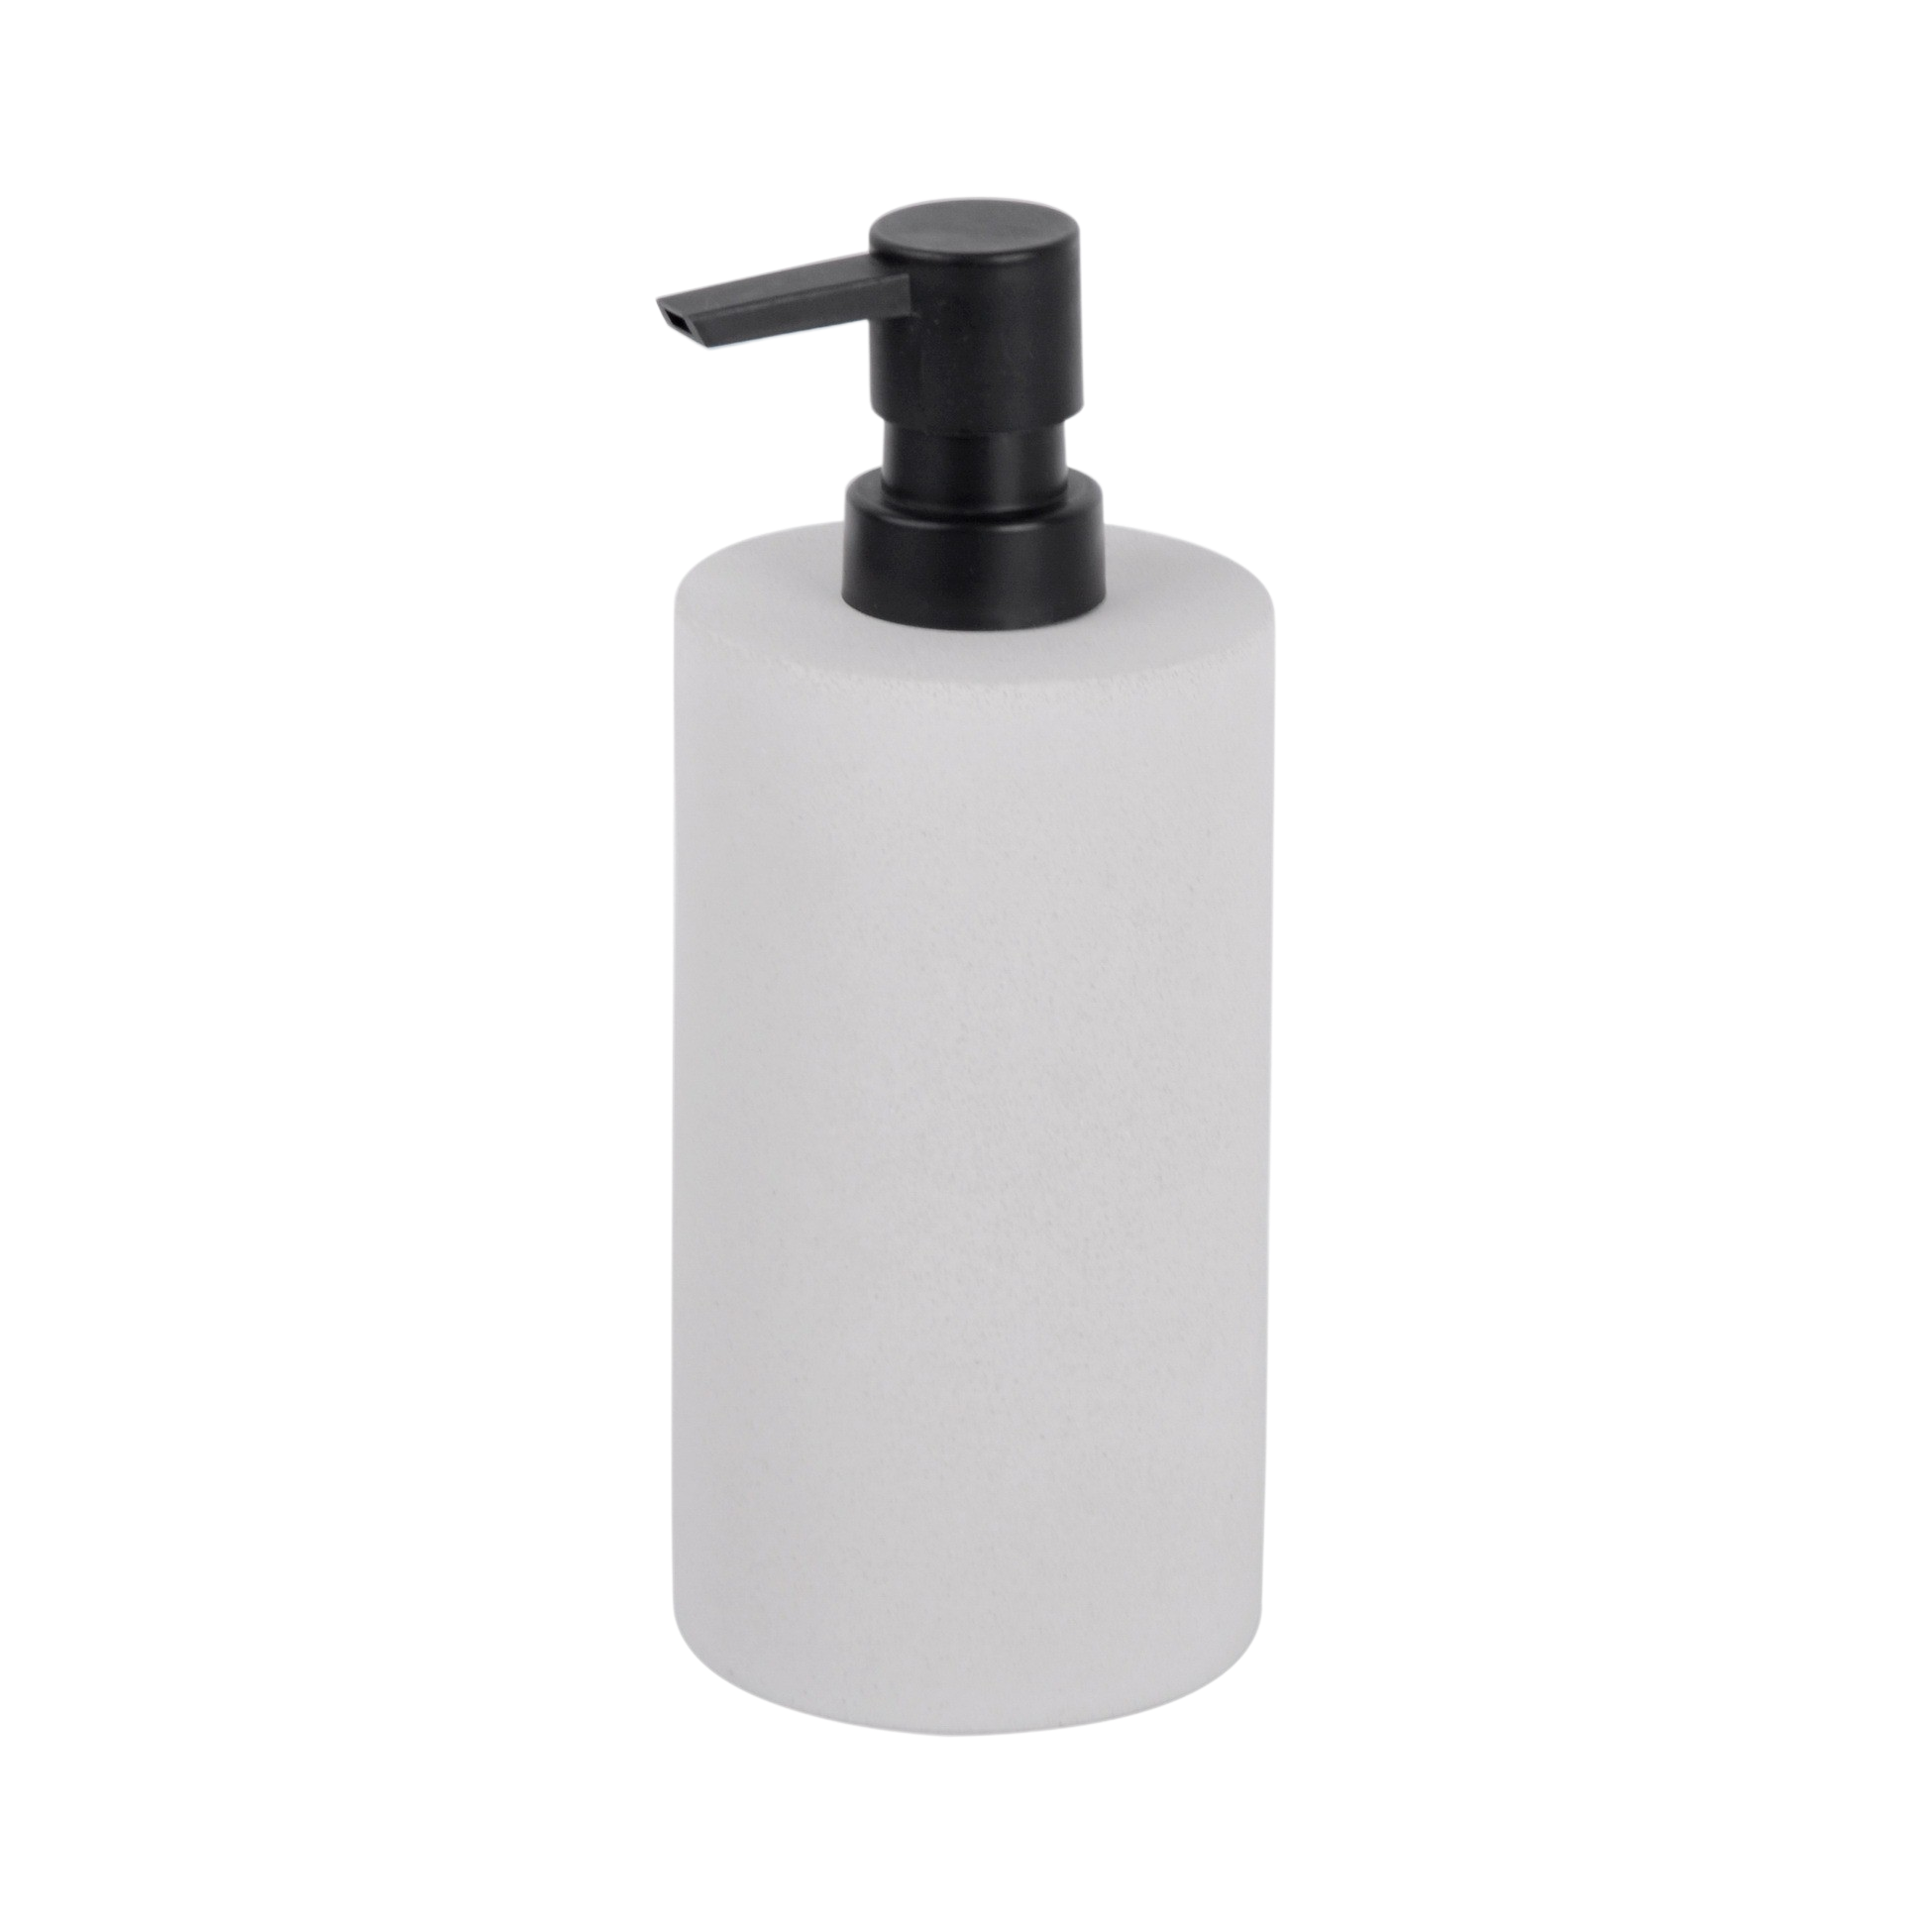 87514 ZEMENT Liquid soap dispenser